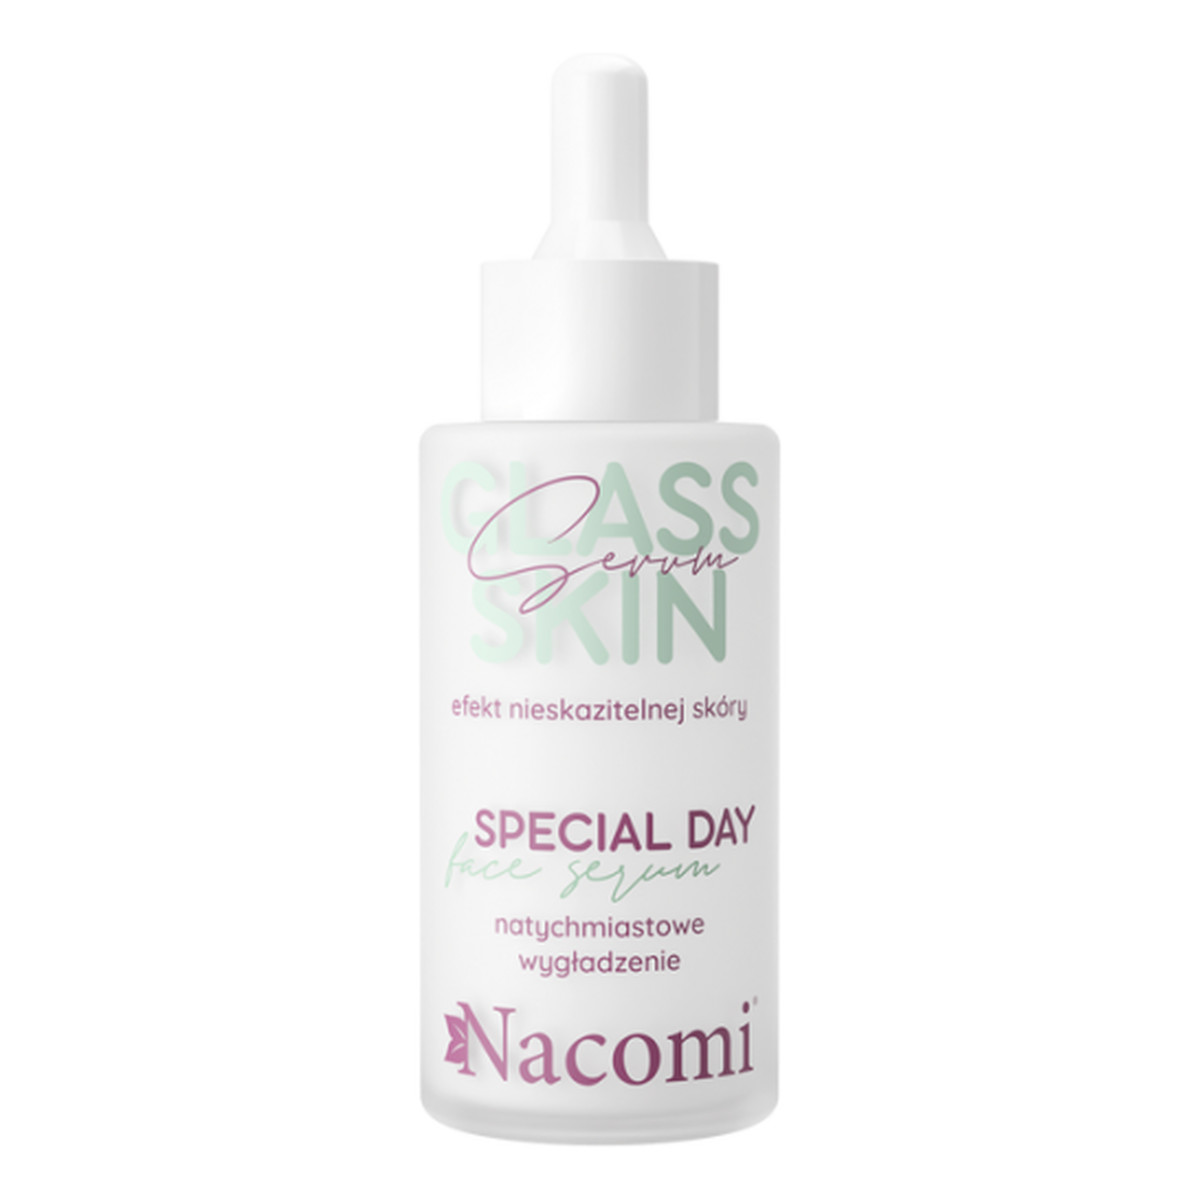 Nacomi Glass Skin Special Day Serum do twarzy 40ml